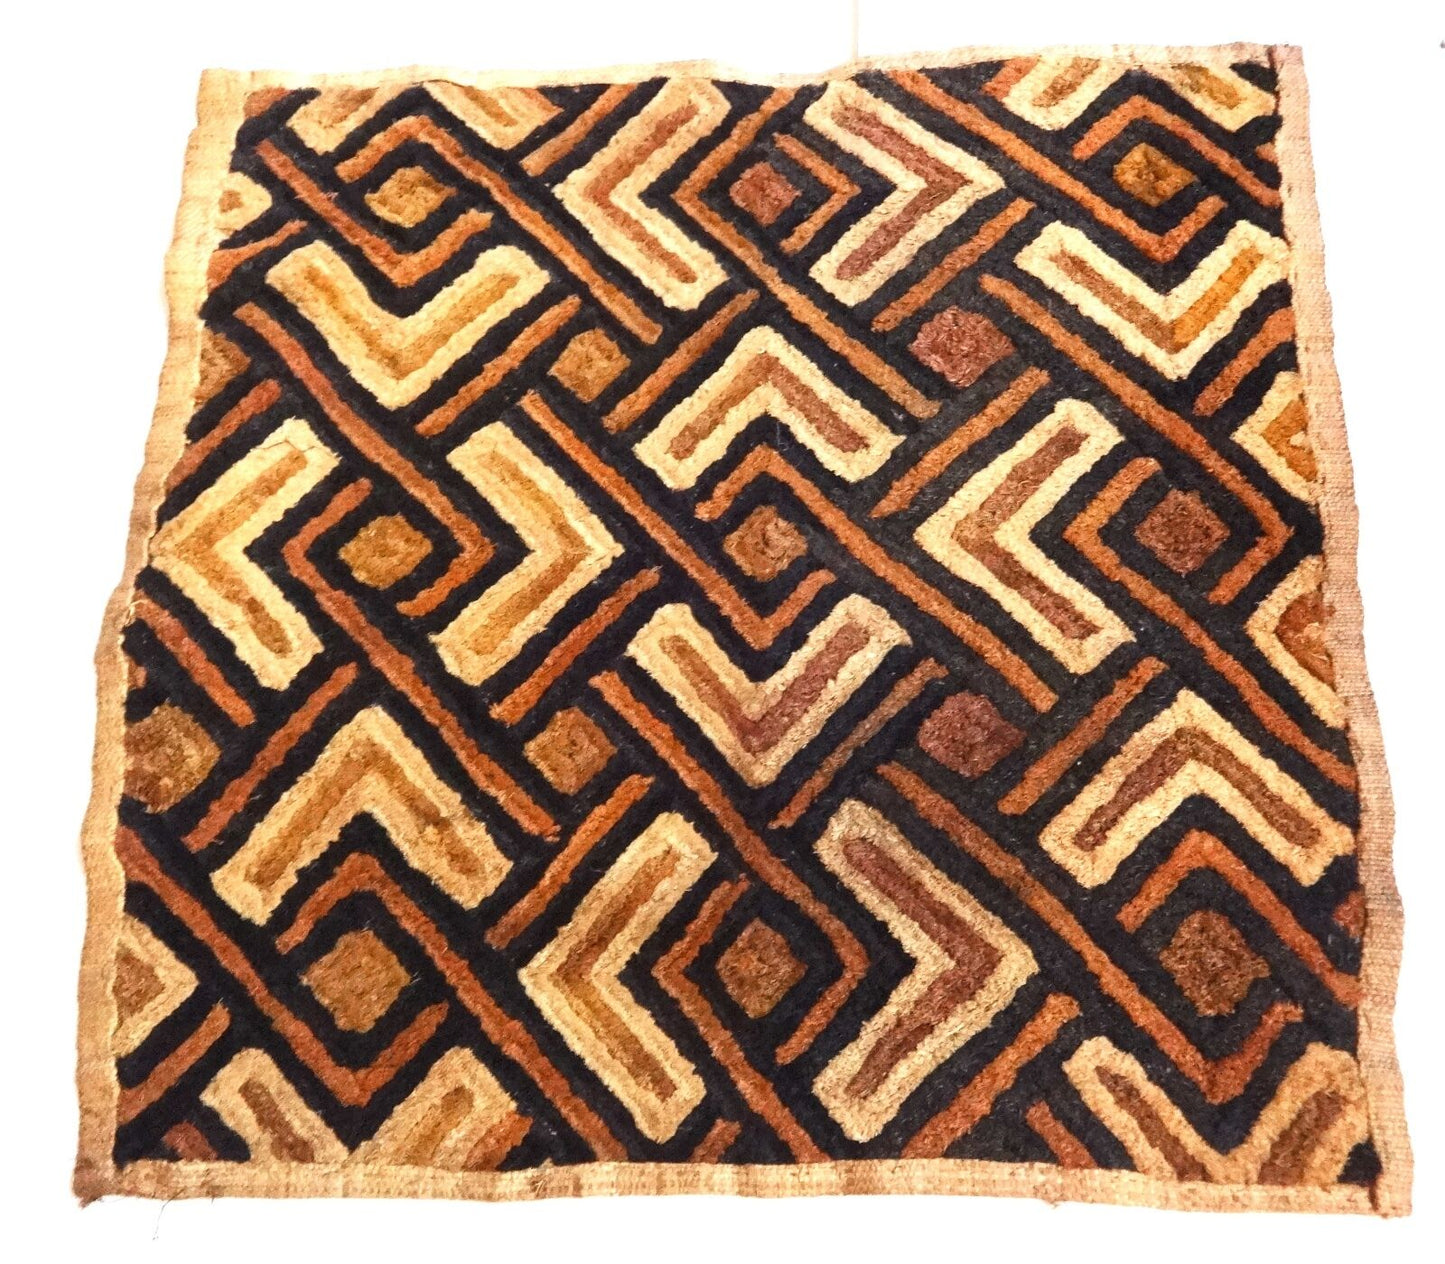 #2041 Superb African Kuba Kasai Velvet Raffia Textile Zaire 26" by 26"